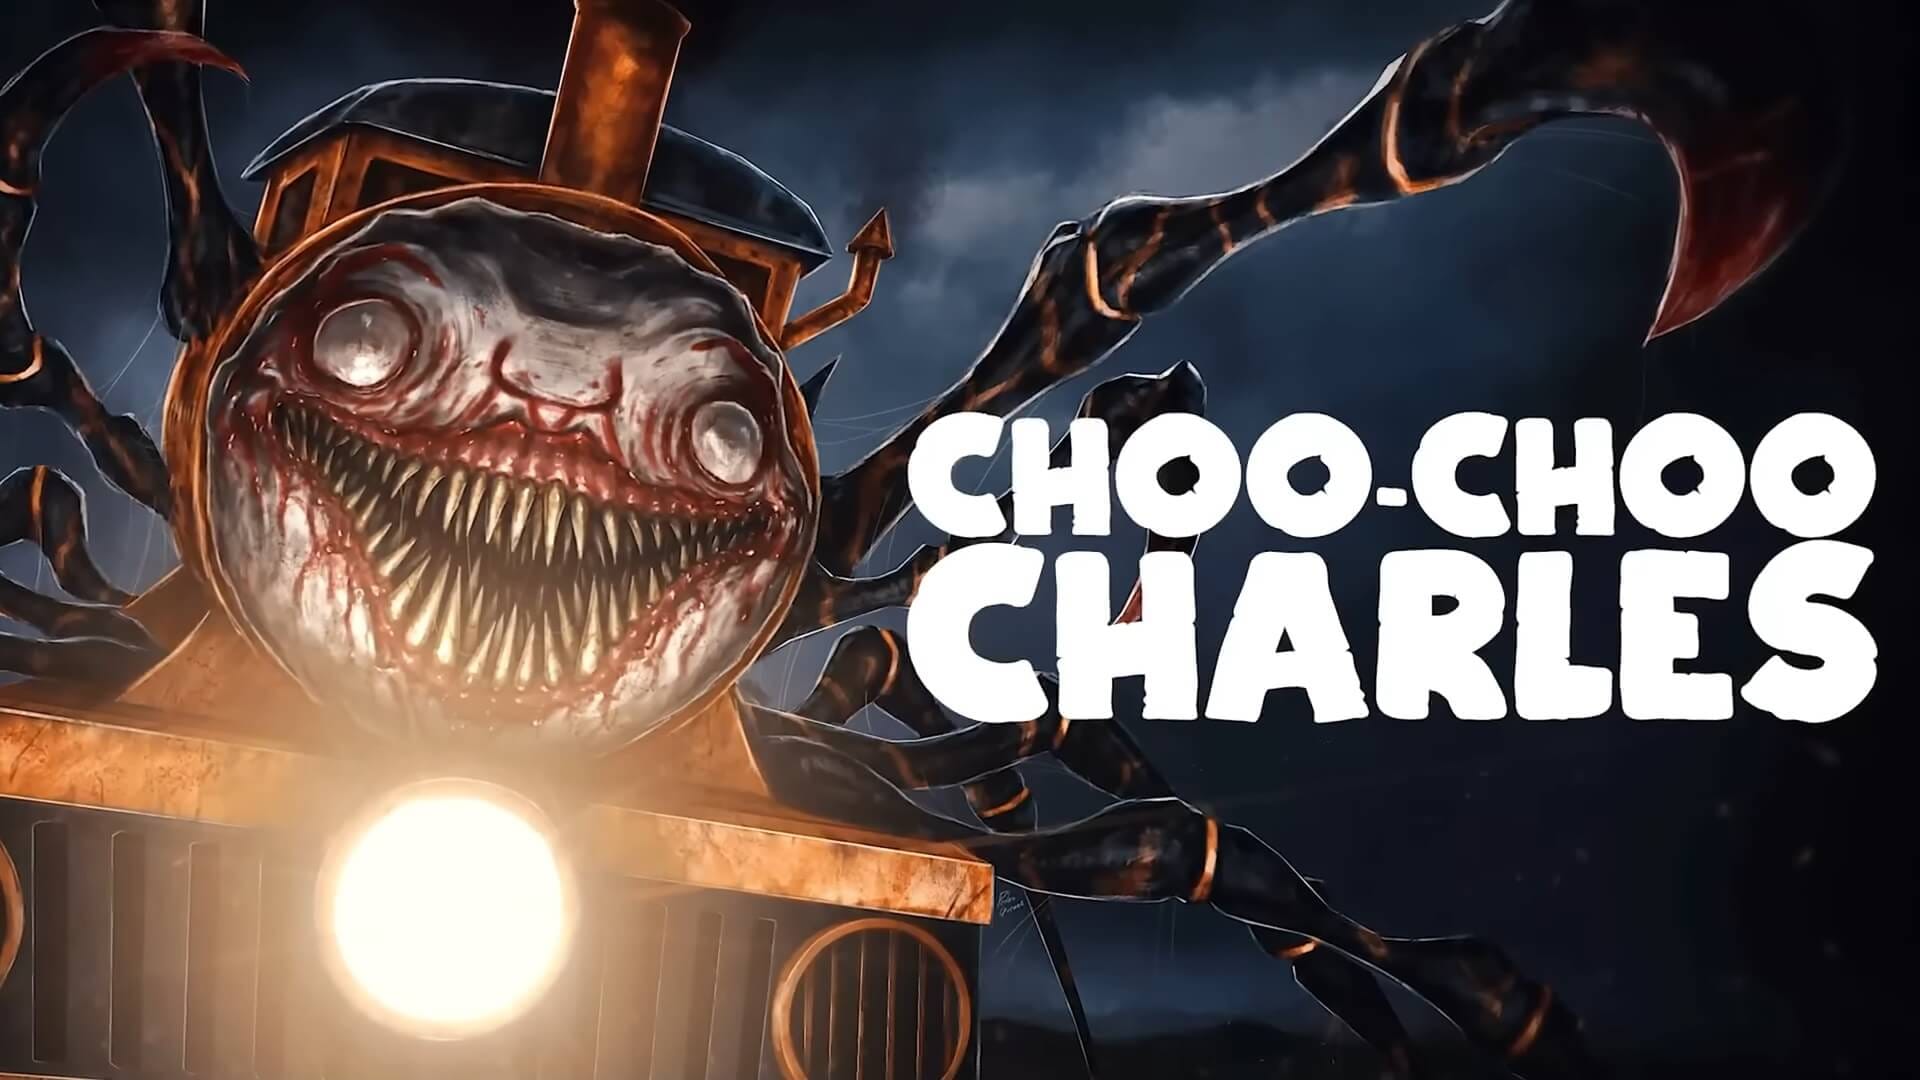 Choo Choo Charles News & Game Info